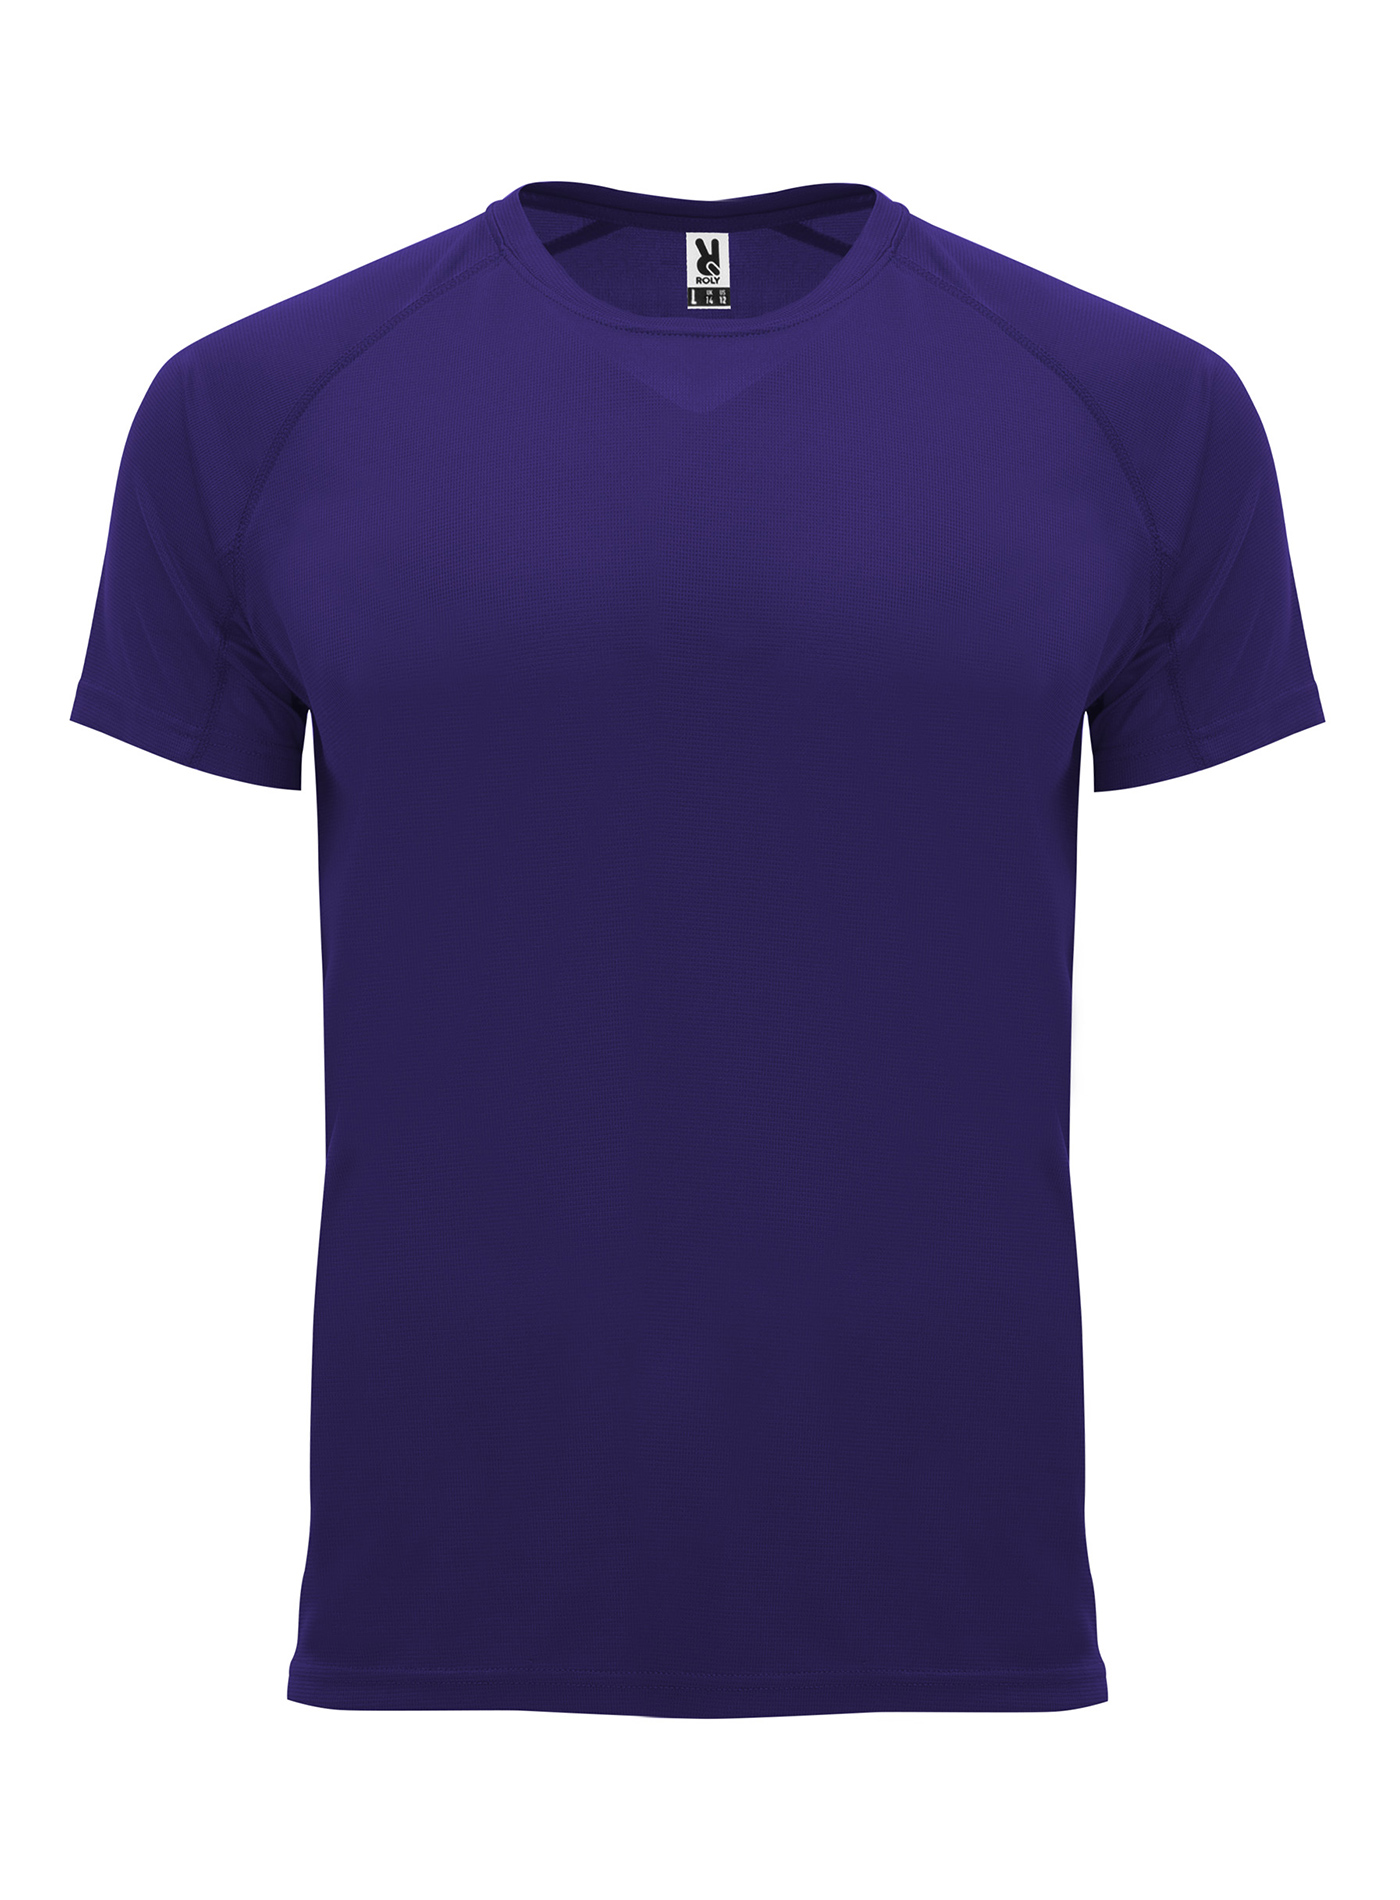 Pánské sportovní tričko Roly Bahrain - Tmavě fialová XL